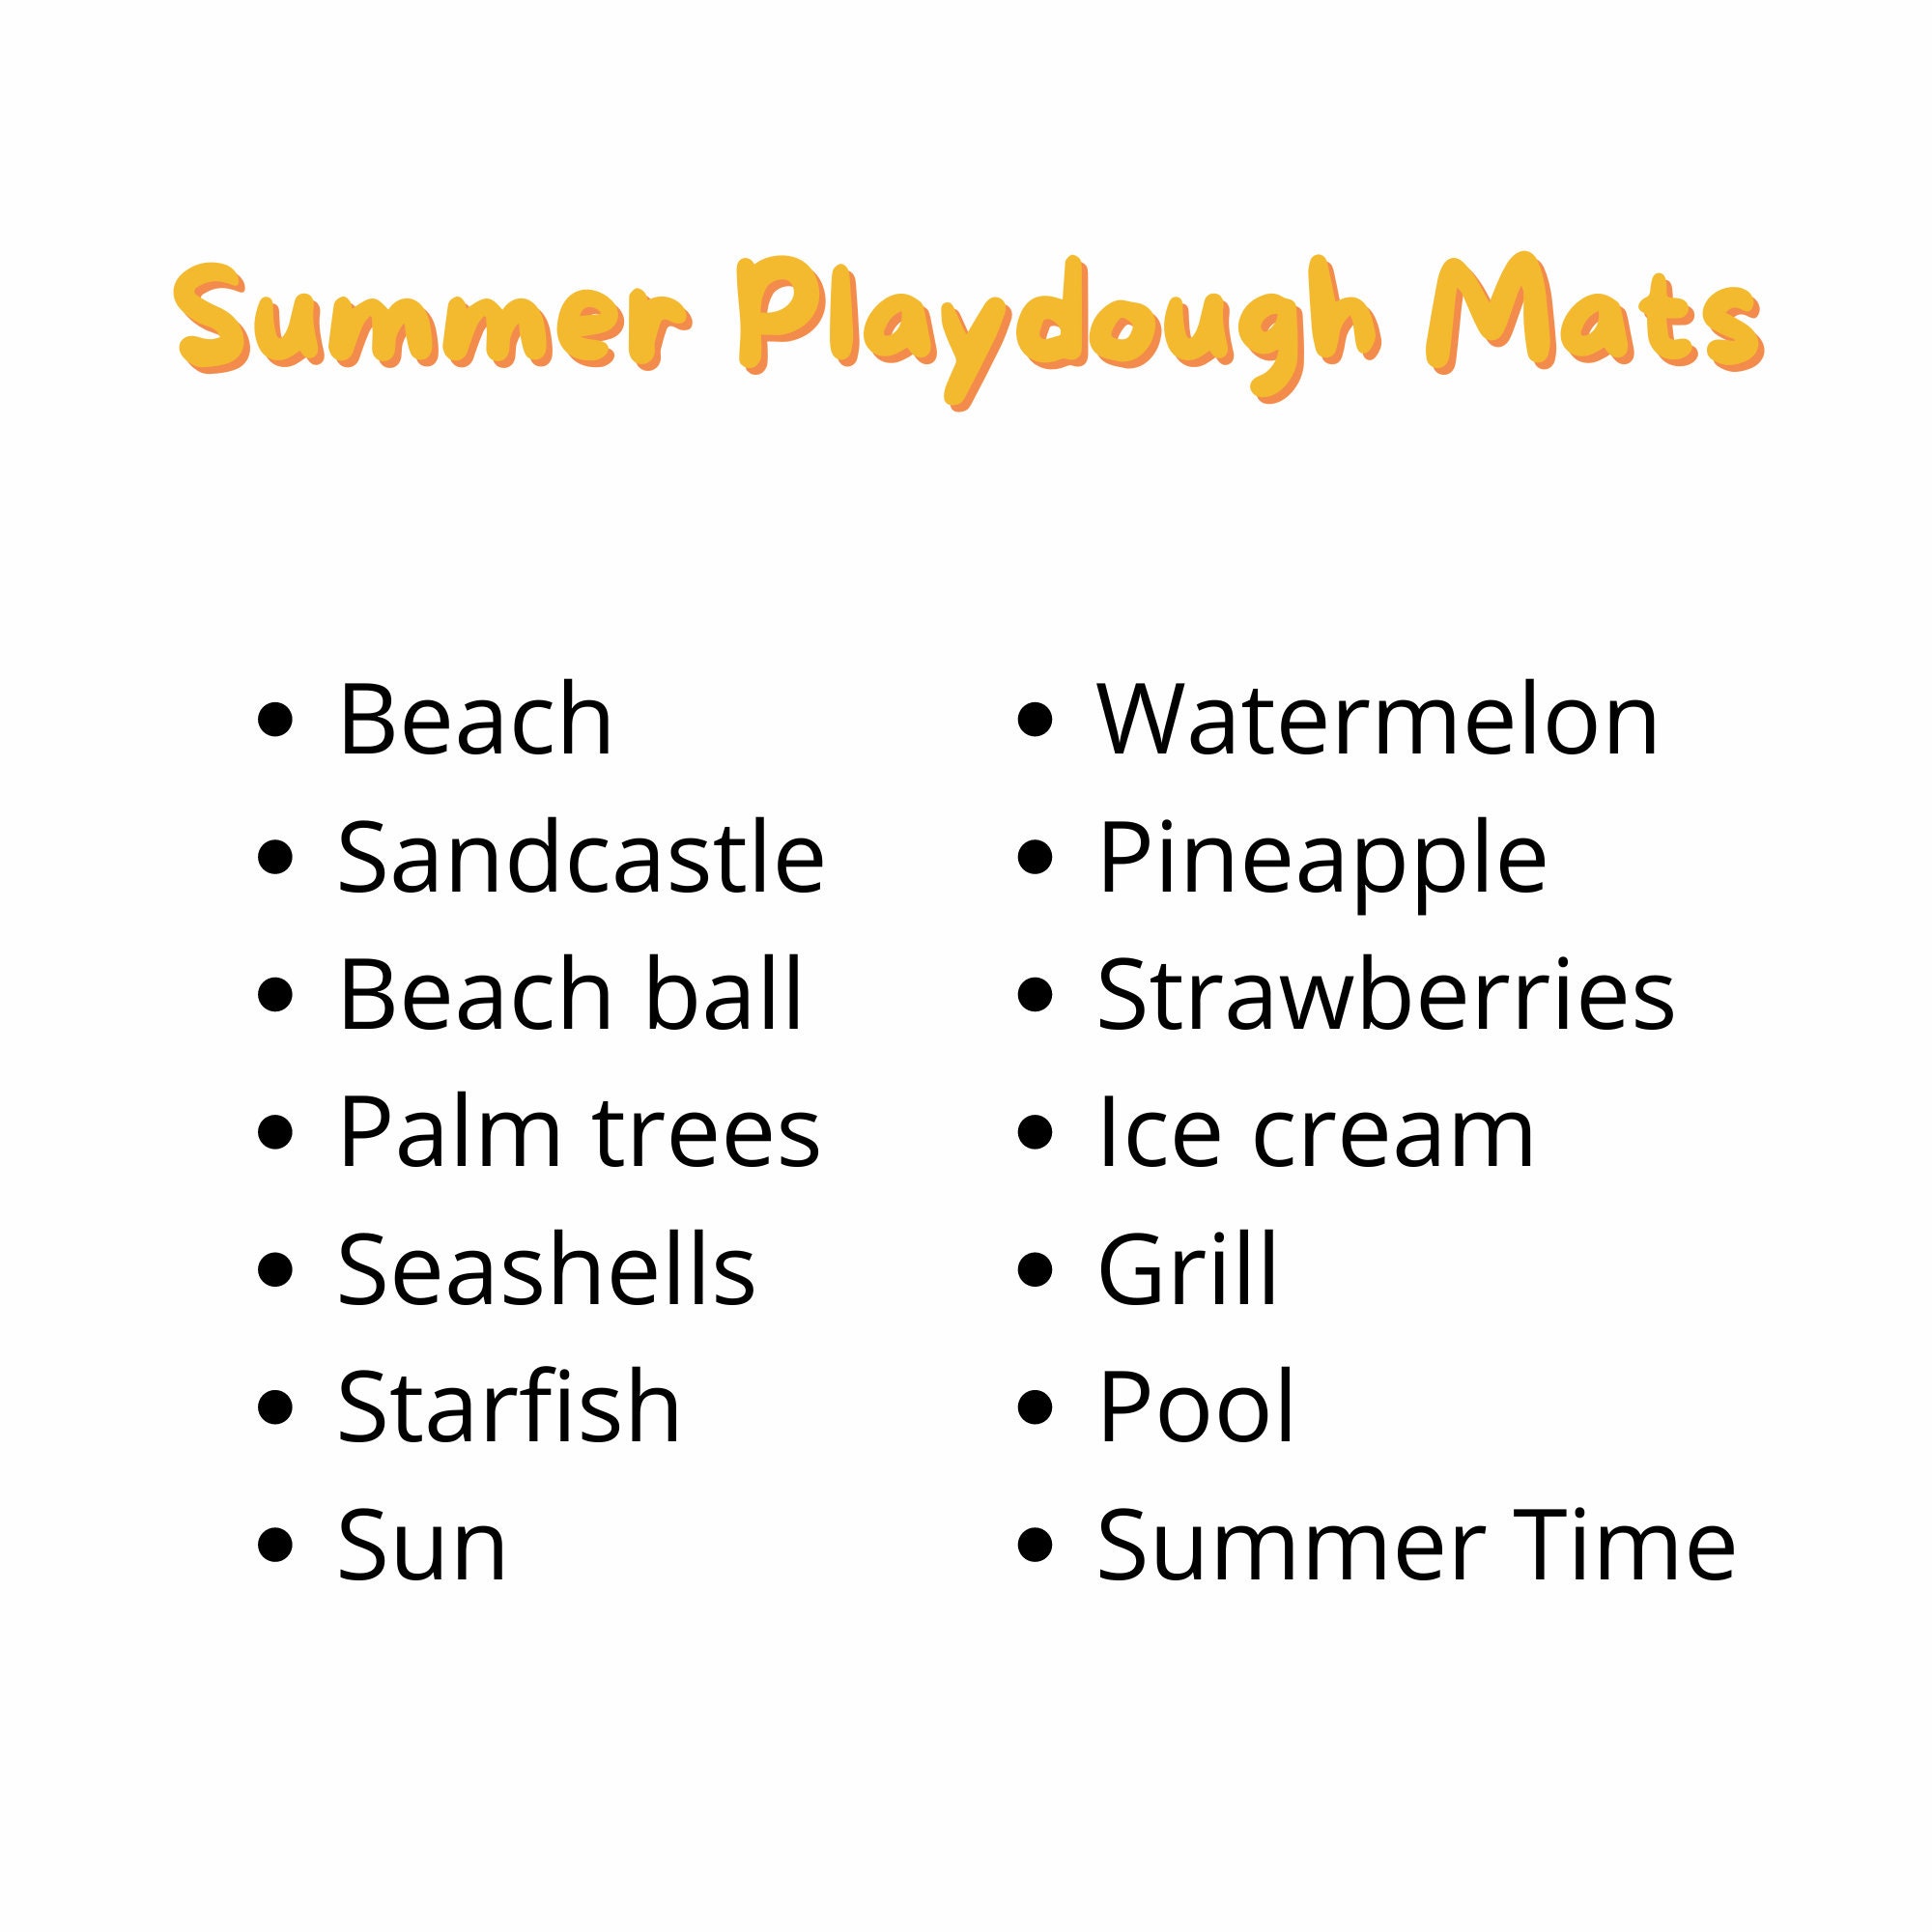 Summer Play Dough Mats - Gift of Curiosity